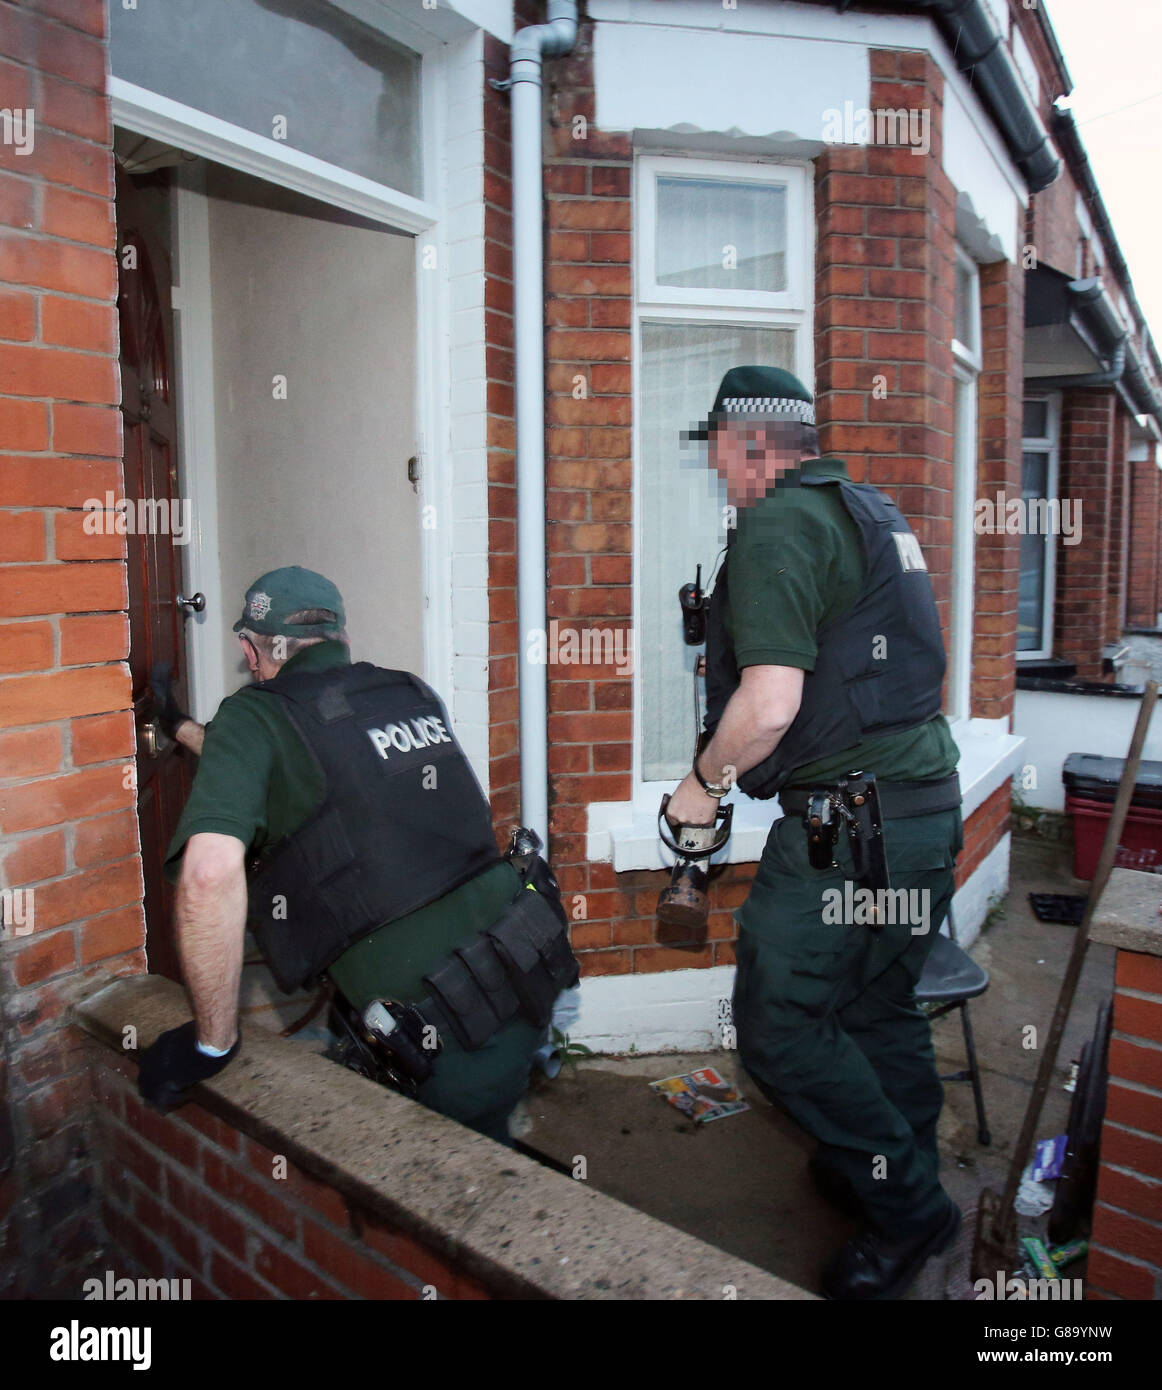 PSNI ufficiali effettuare una droga raid su una casa nella zona est di Belfast come parte di Operazione Toro, un'iniziativa volta ad affrontare a livello di strada spaccio di droga. Foto Stock